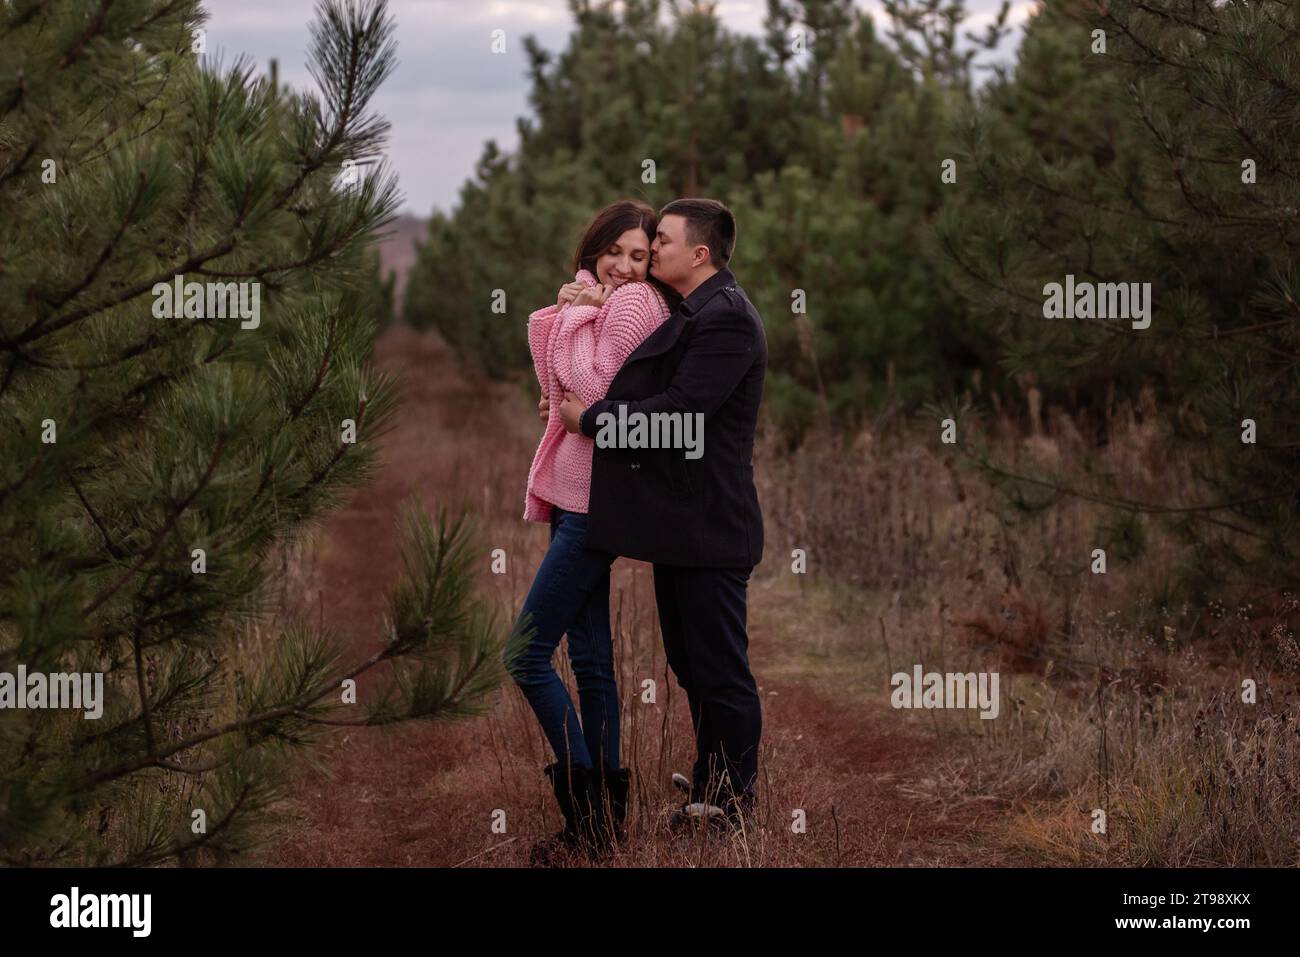 Ritratto ravvicinato della coppia felice che abbraccia la foresta di conifere verdi. Cappotto nero avvolto tattile intorno a una donna dai capelli ricci in un maglione rosa Foto Stock